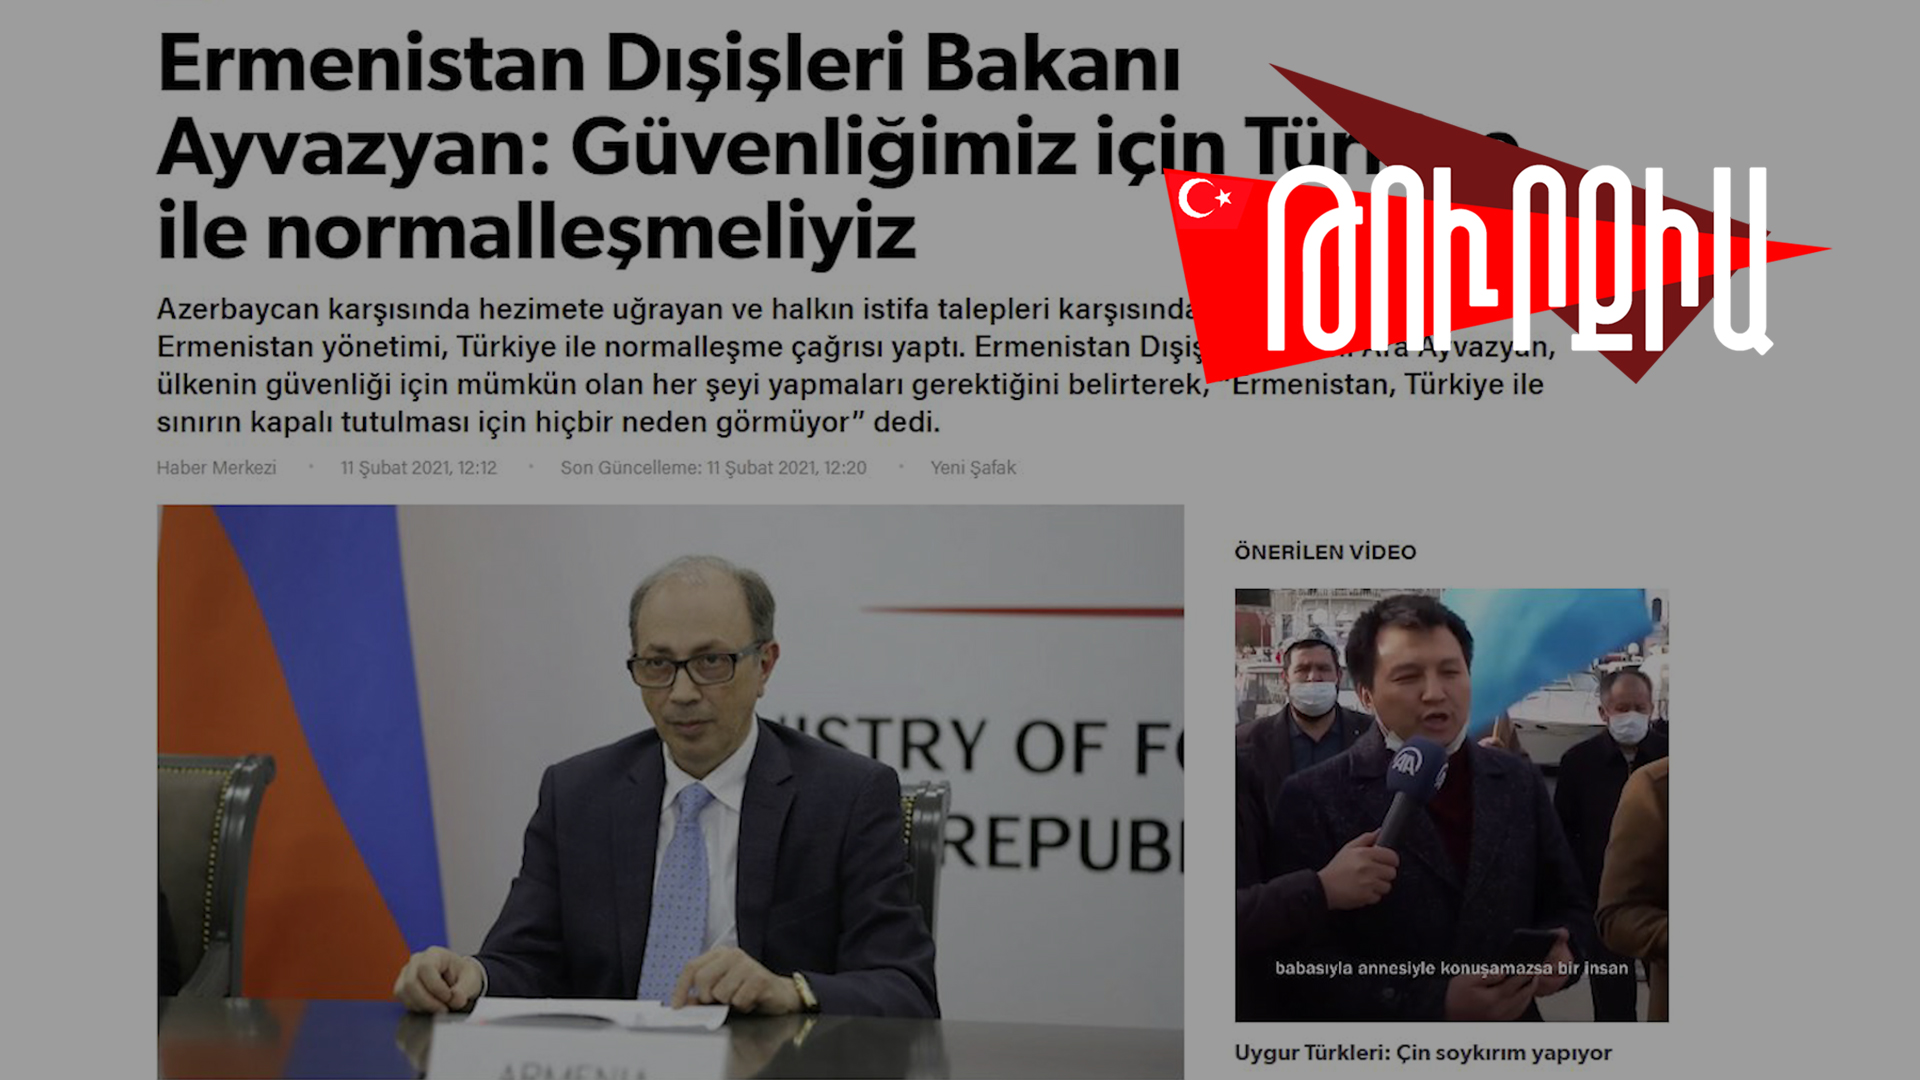 Արա Այվազյանի հայտարարությունը Թուրքիայում «անակնկալ» են համարել